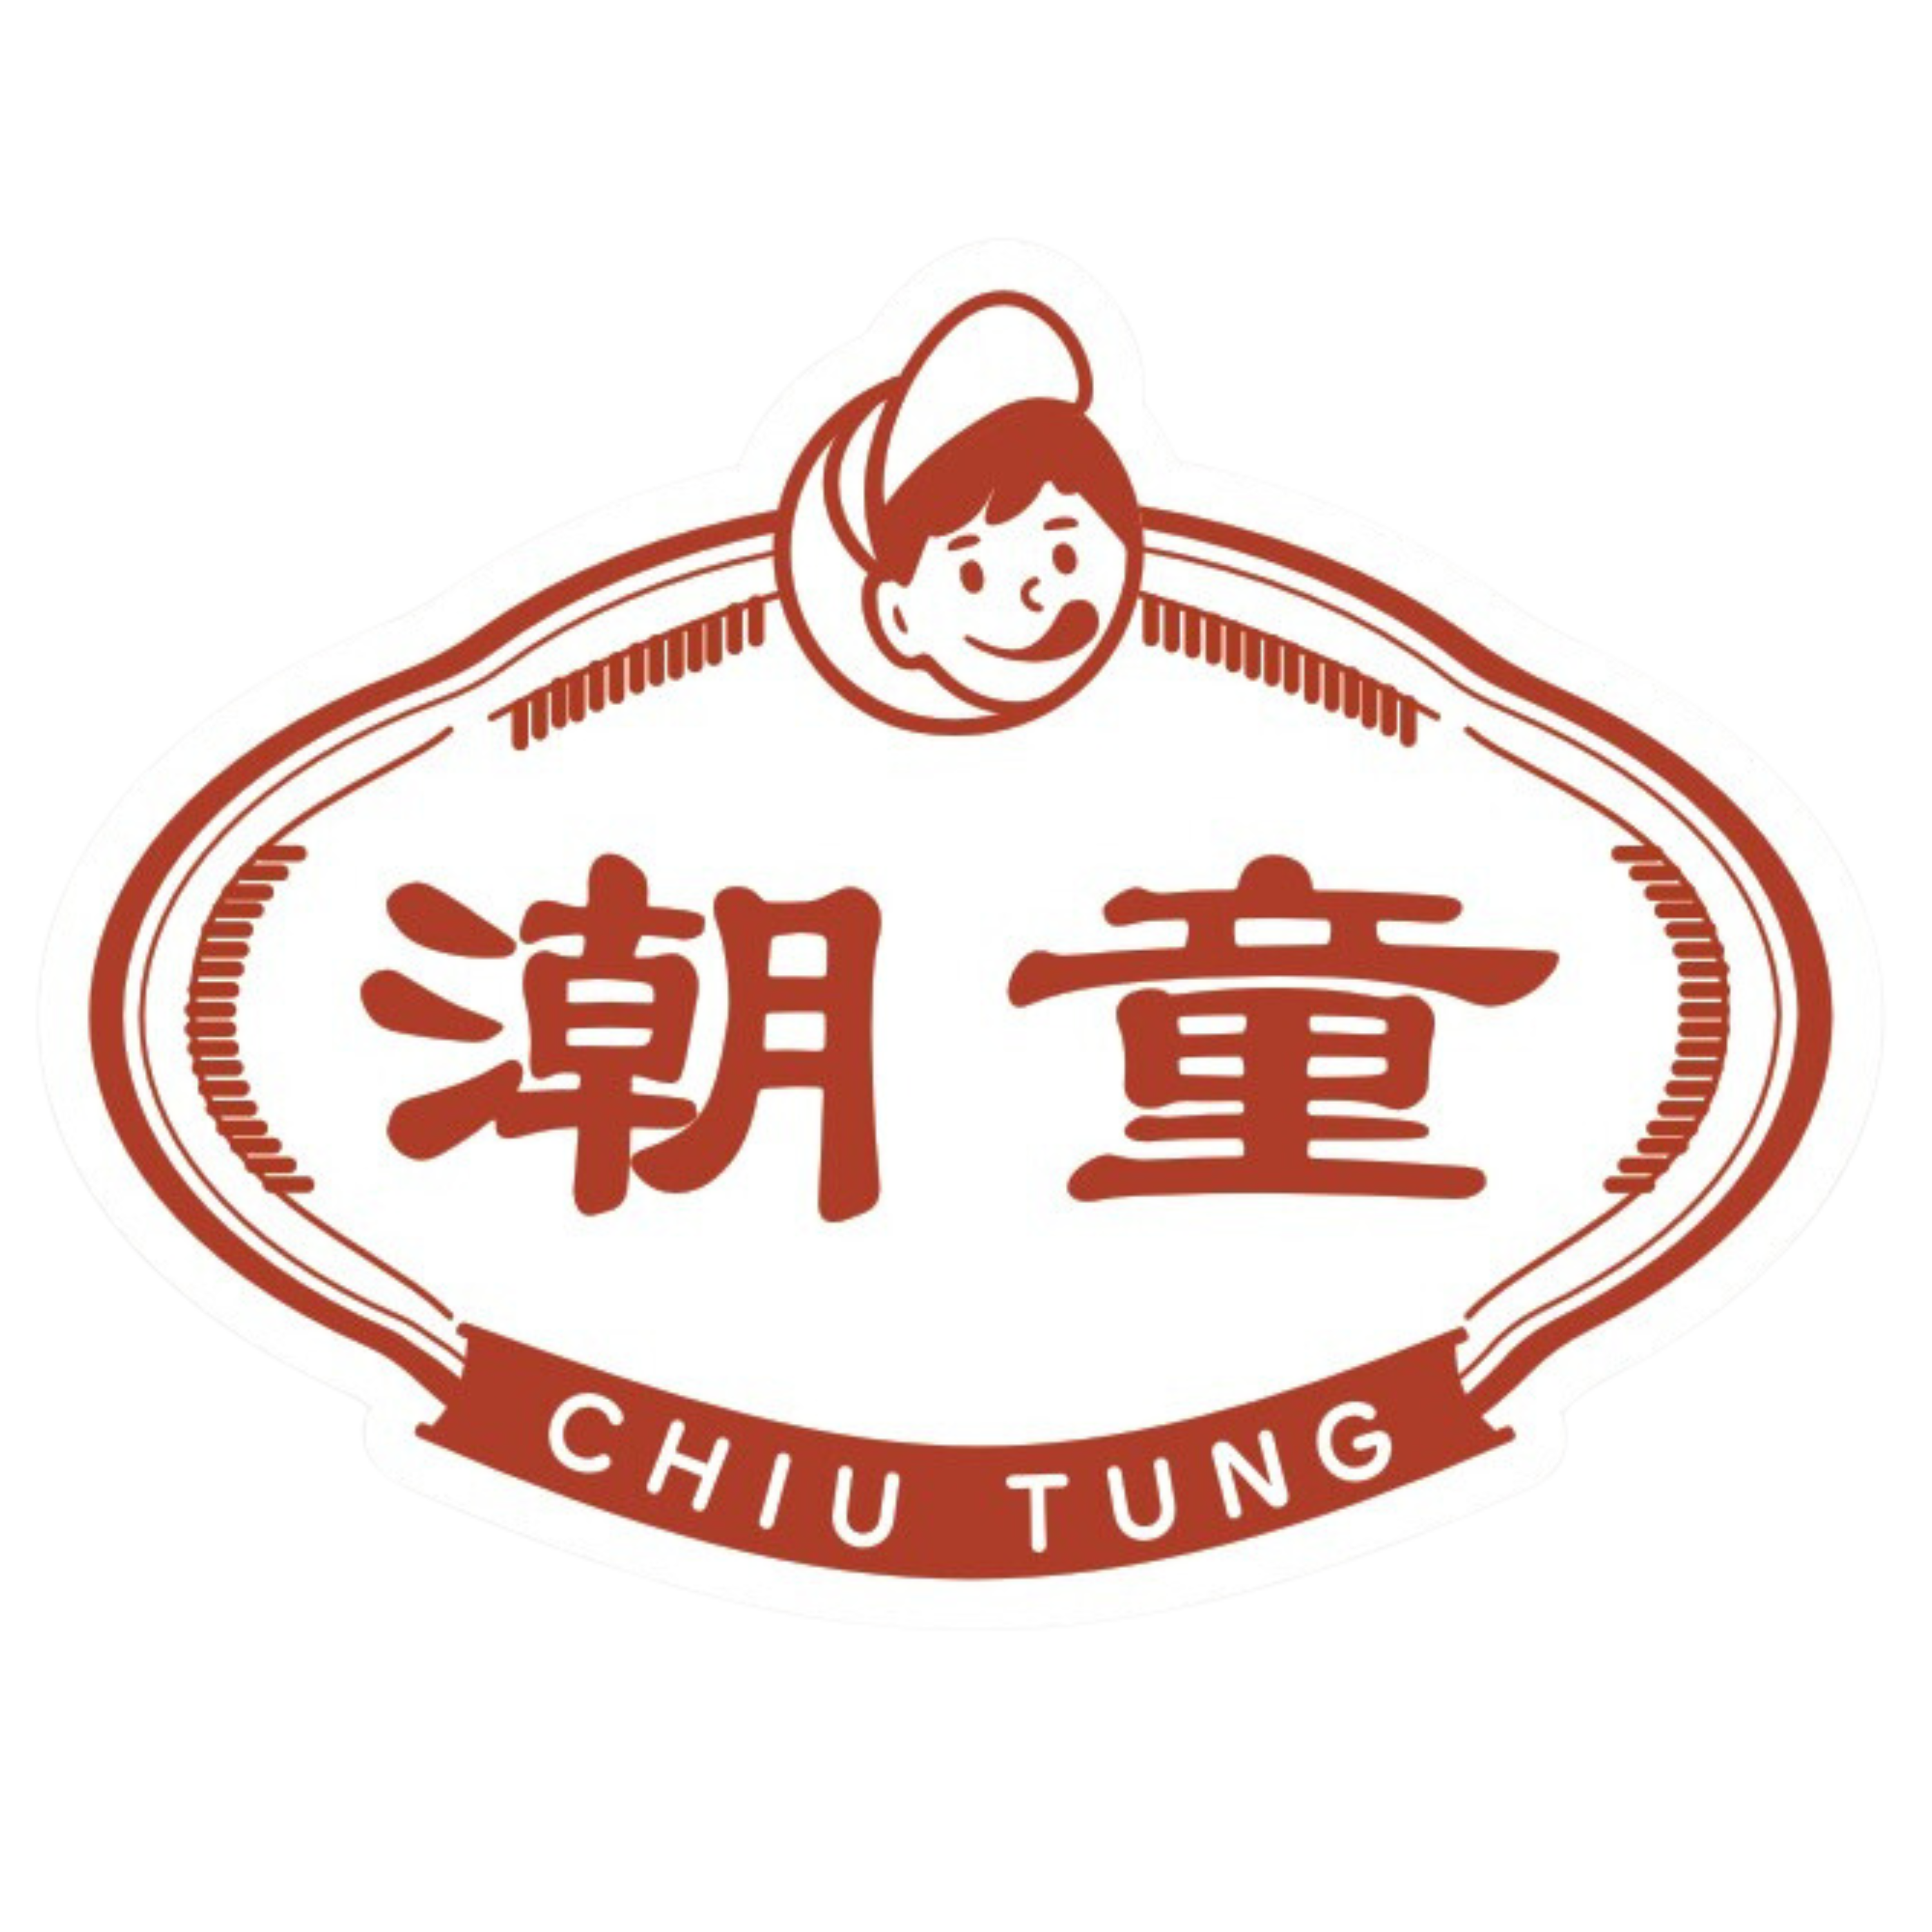 Chiutung store logo